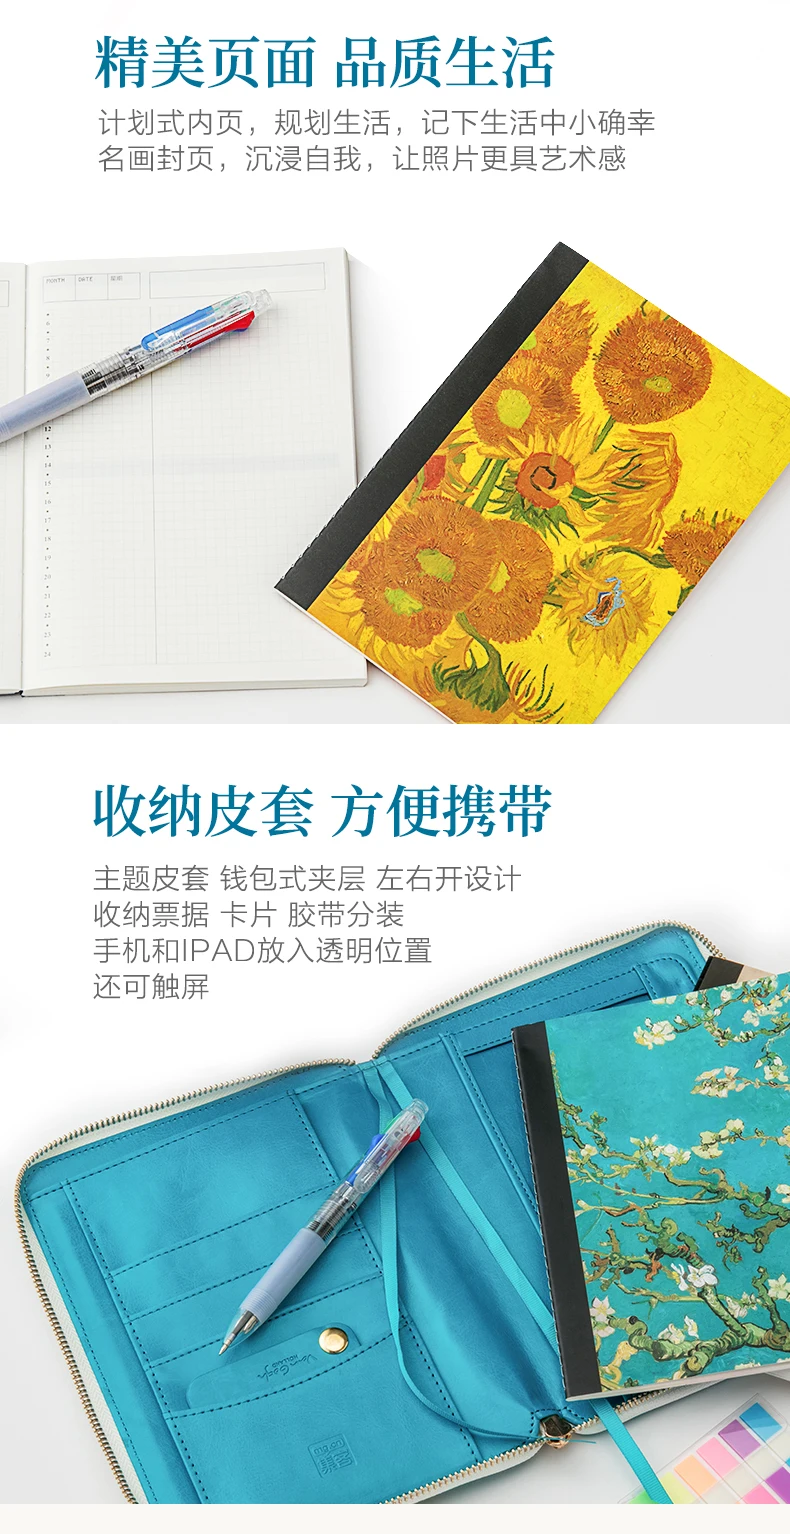 Новое поступление Yiwi известный Подсолнух абрикосовые цветы на молнии сумка планировщик с Хобо наполнитель страниц стикеры подарки канцелярские принадлежности